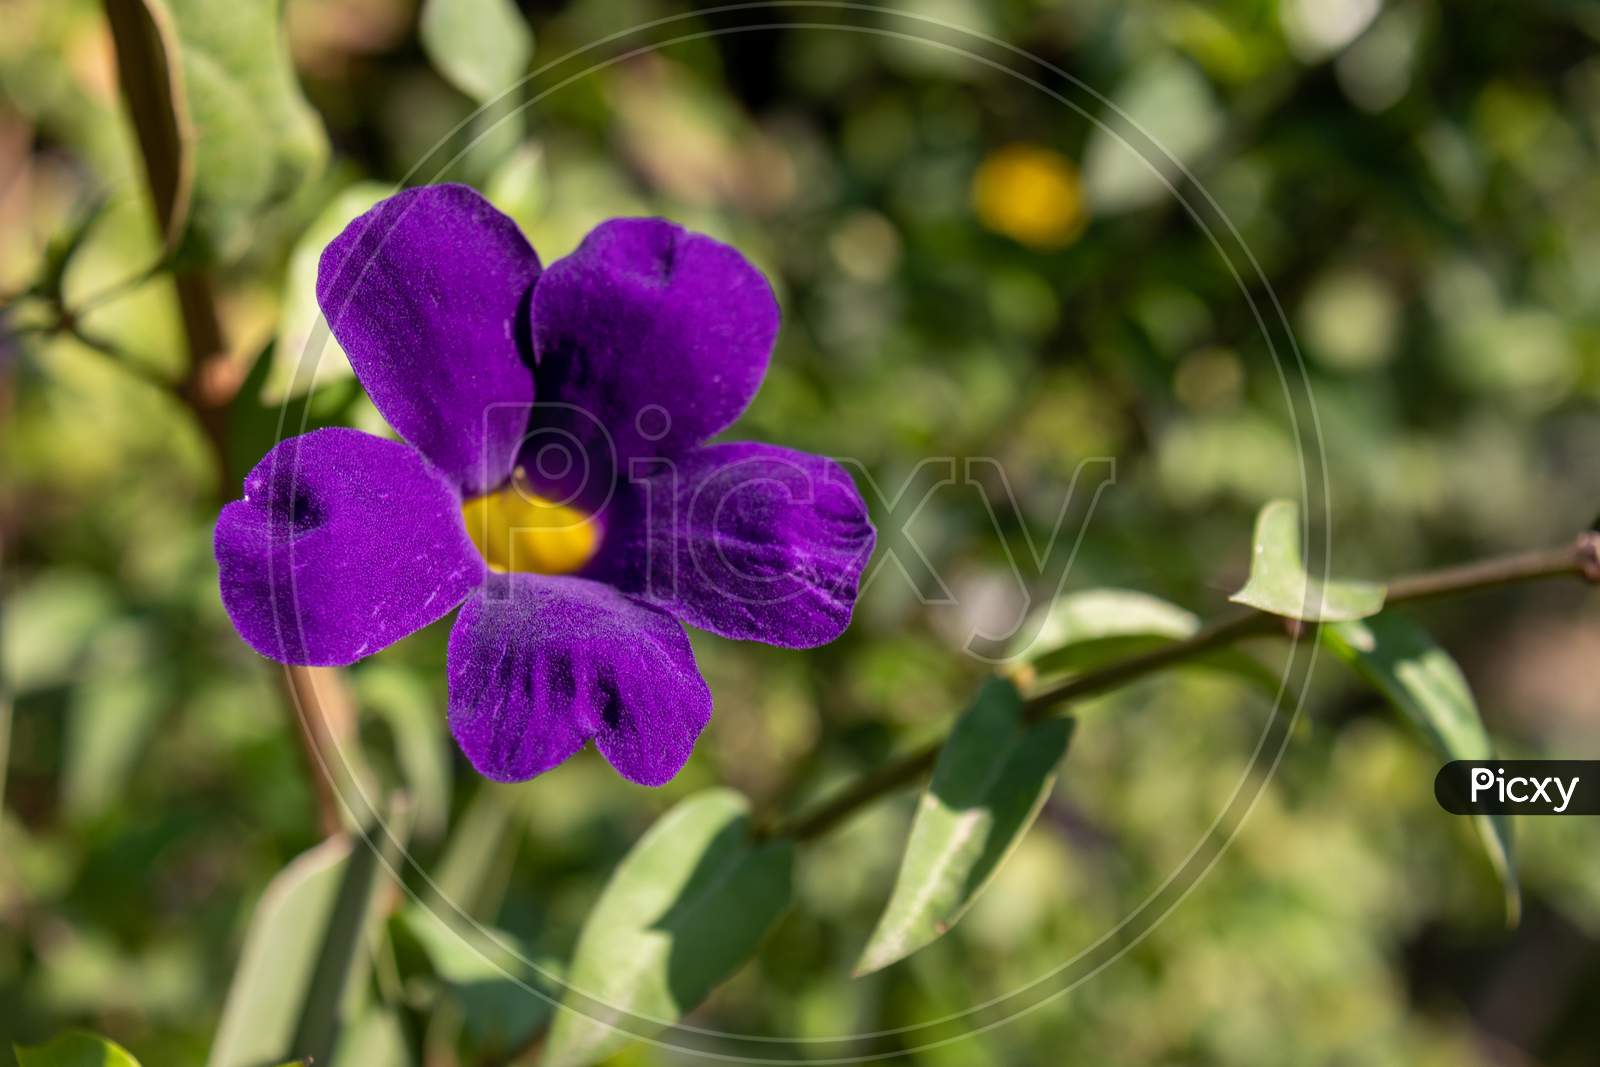 Wild species of Purple flower